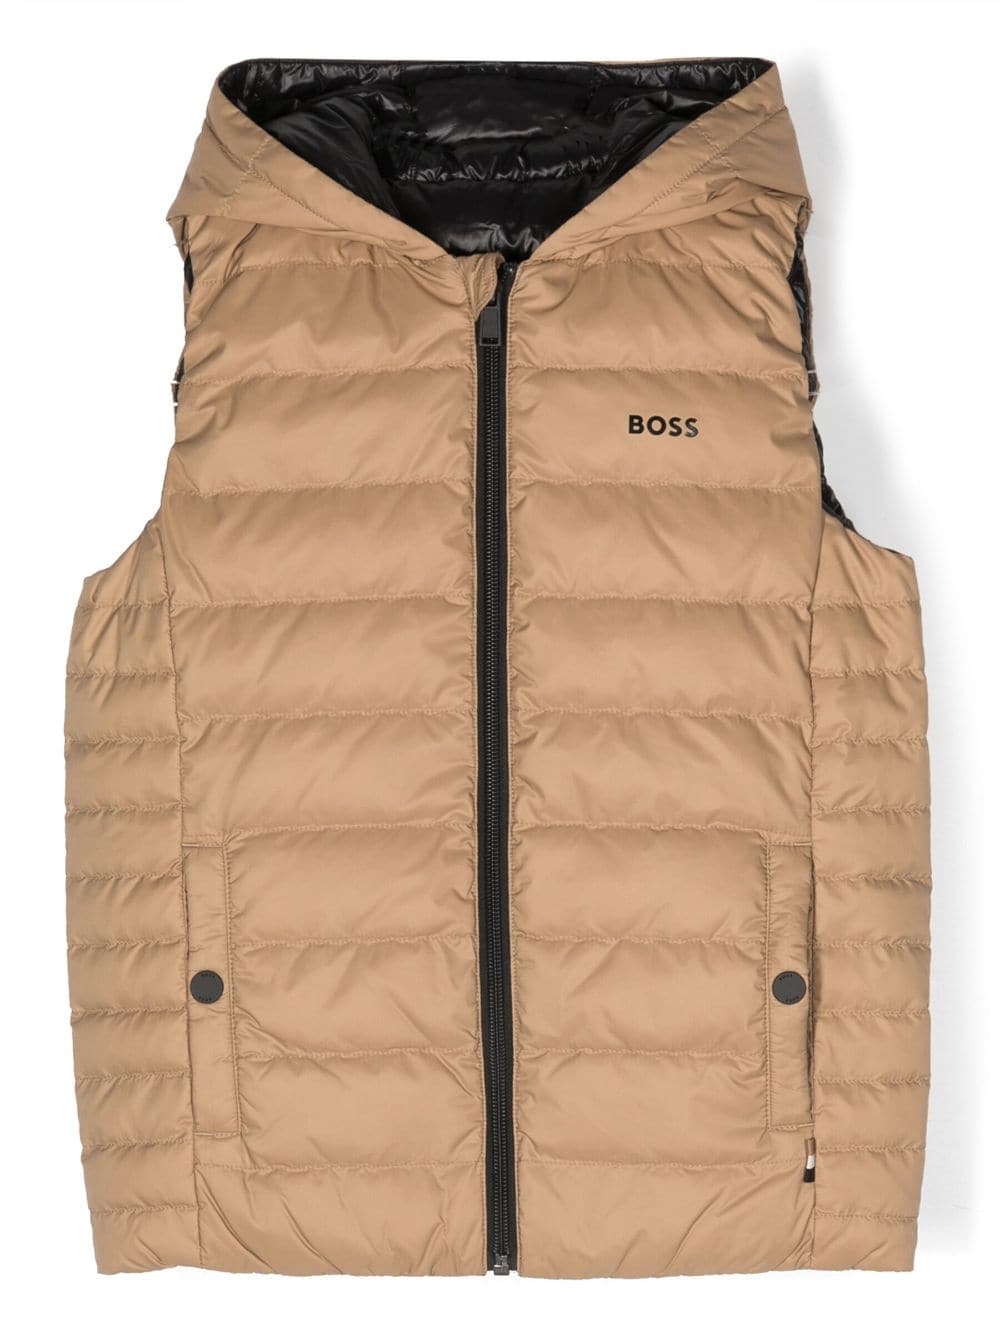 Reversible nylon boy HUGO BOSS hooded vest